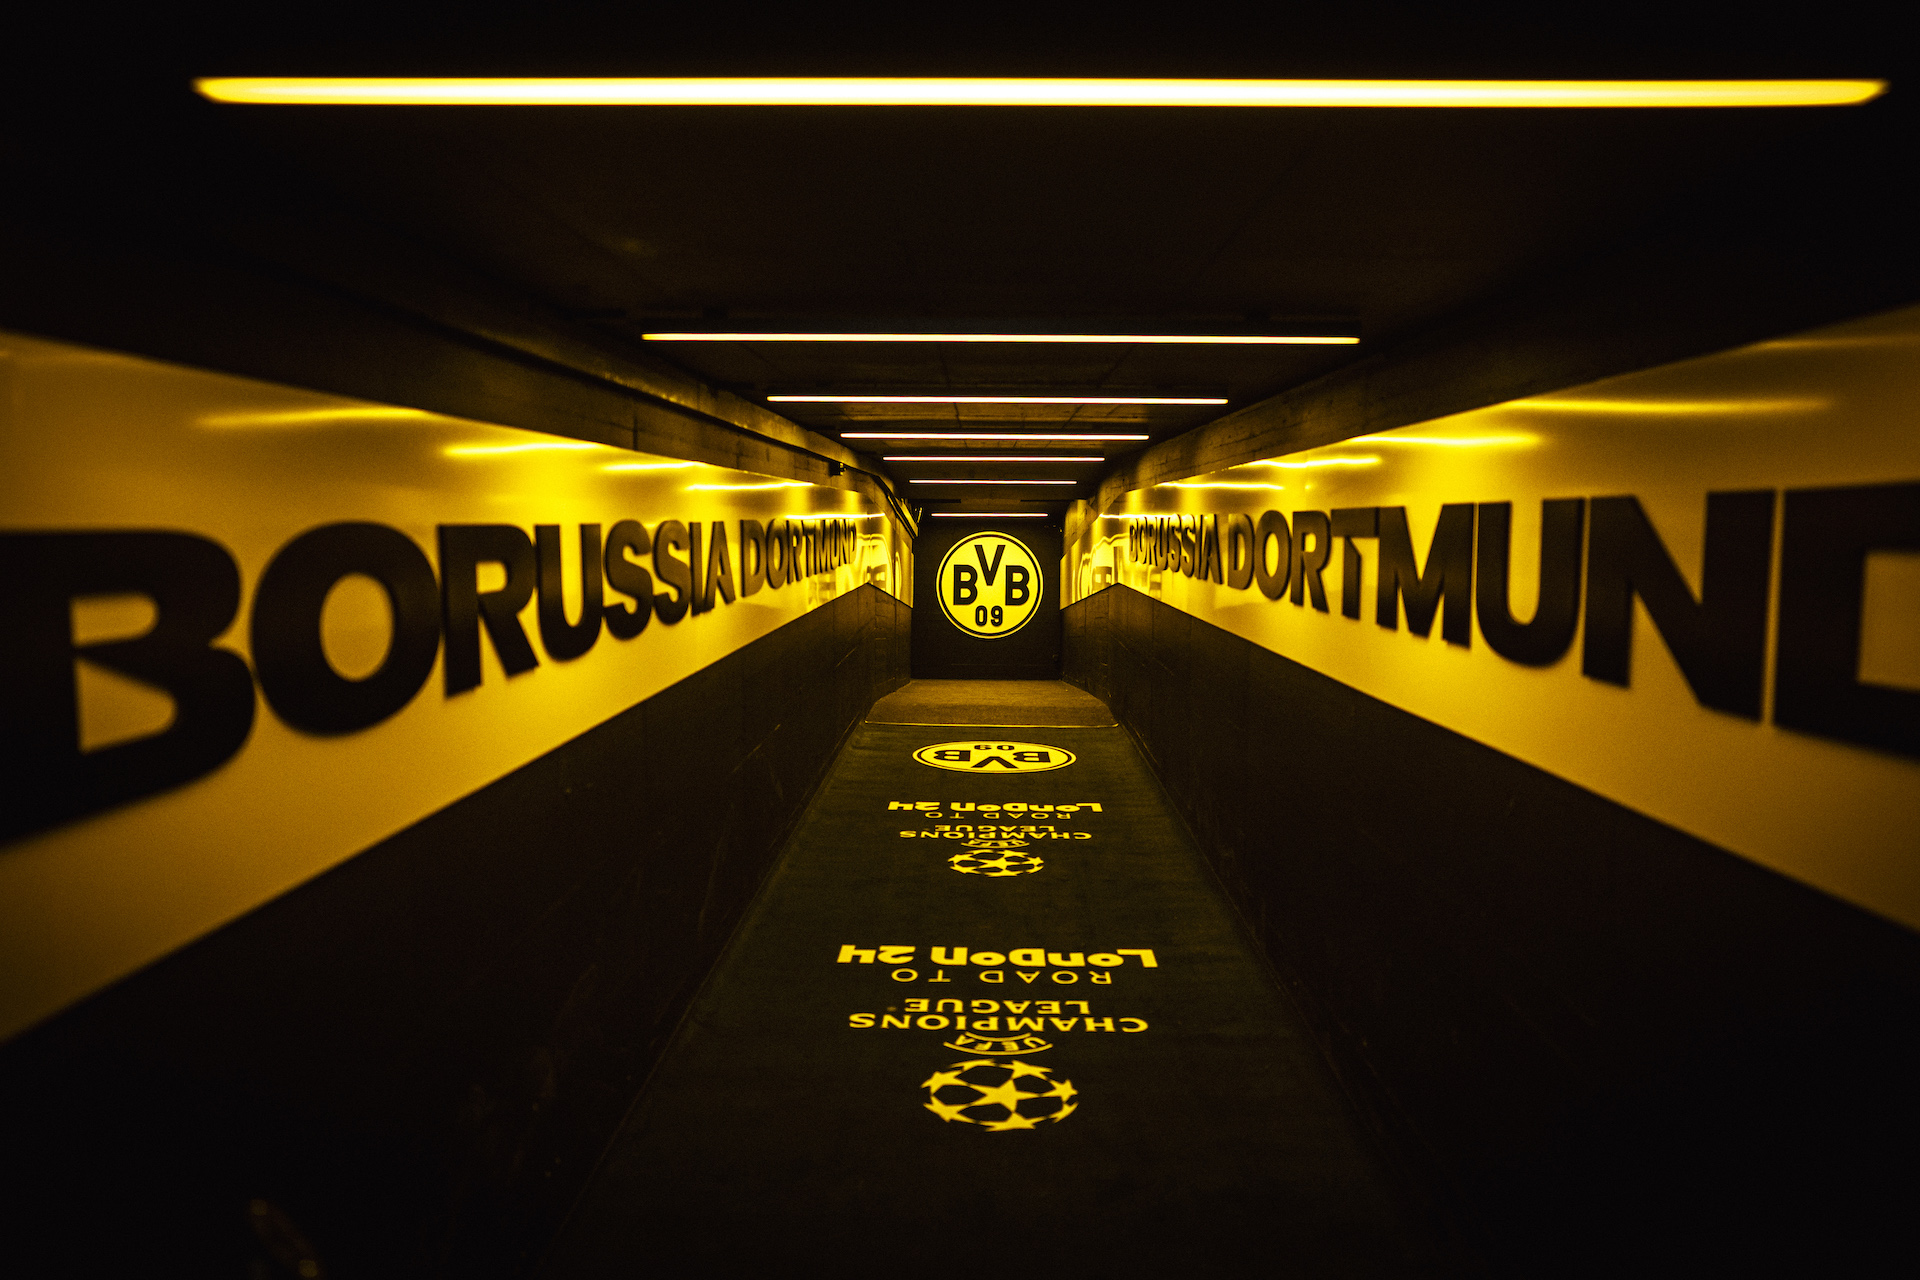 Welkom bij de liveblog voor de return tegen Borussia Dortmund 